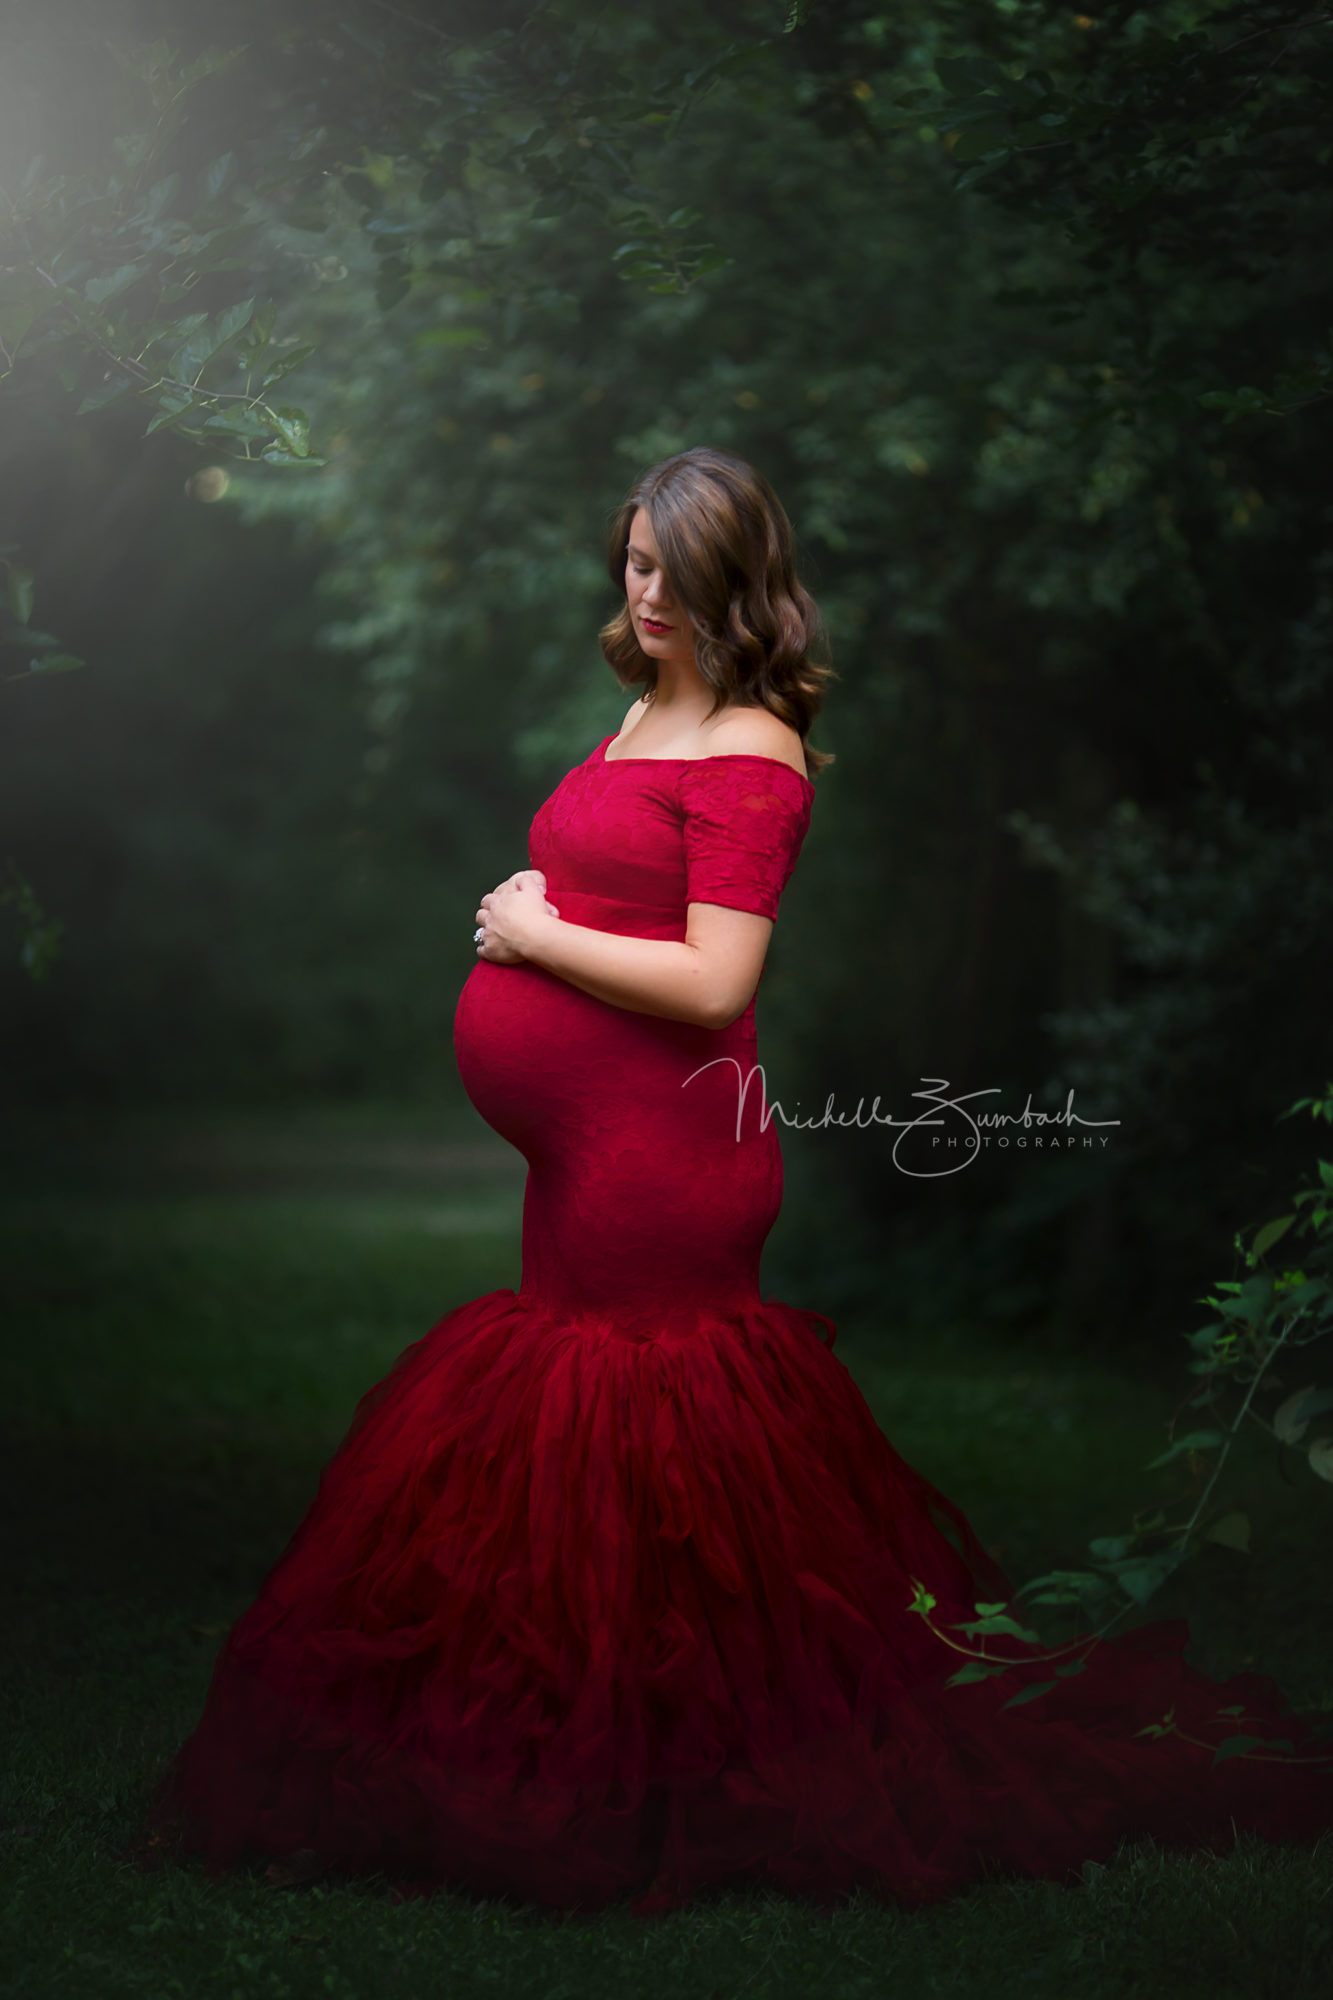 Cedar Rapids maternity photographer